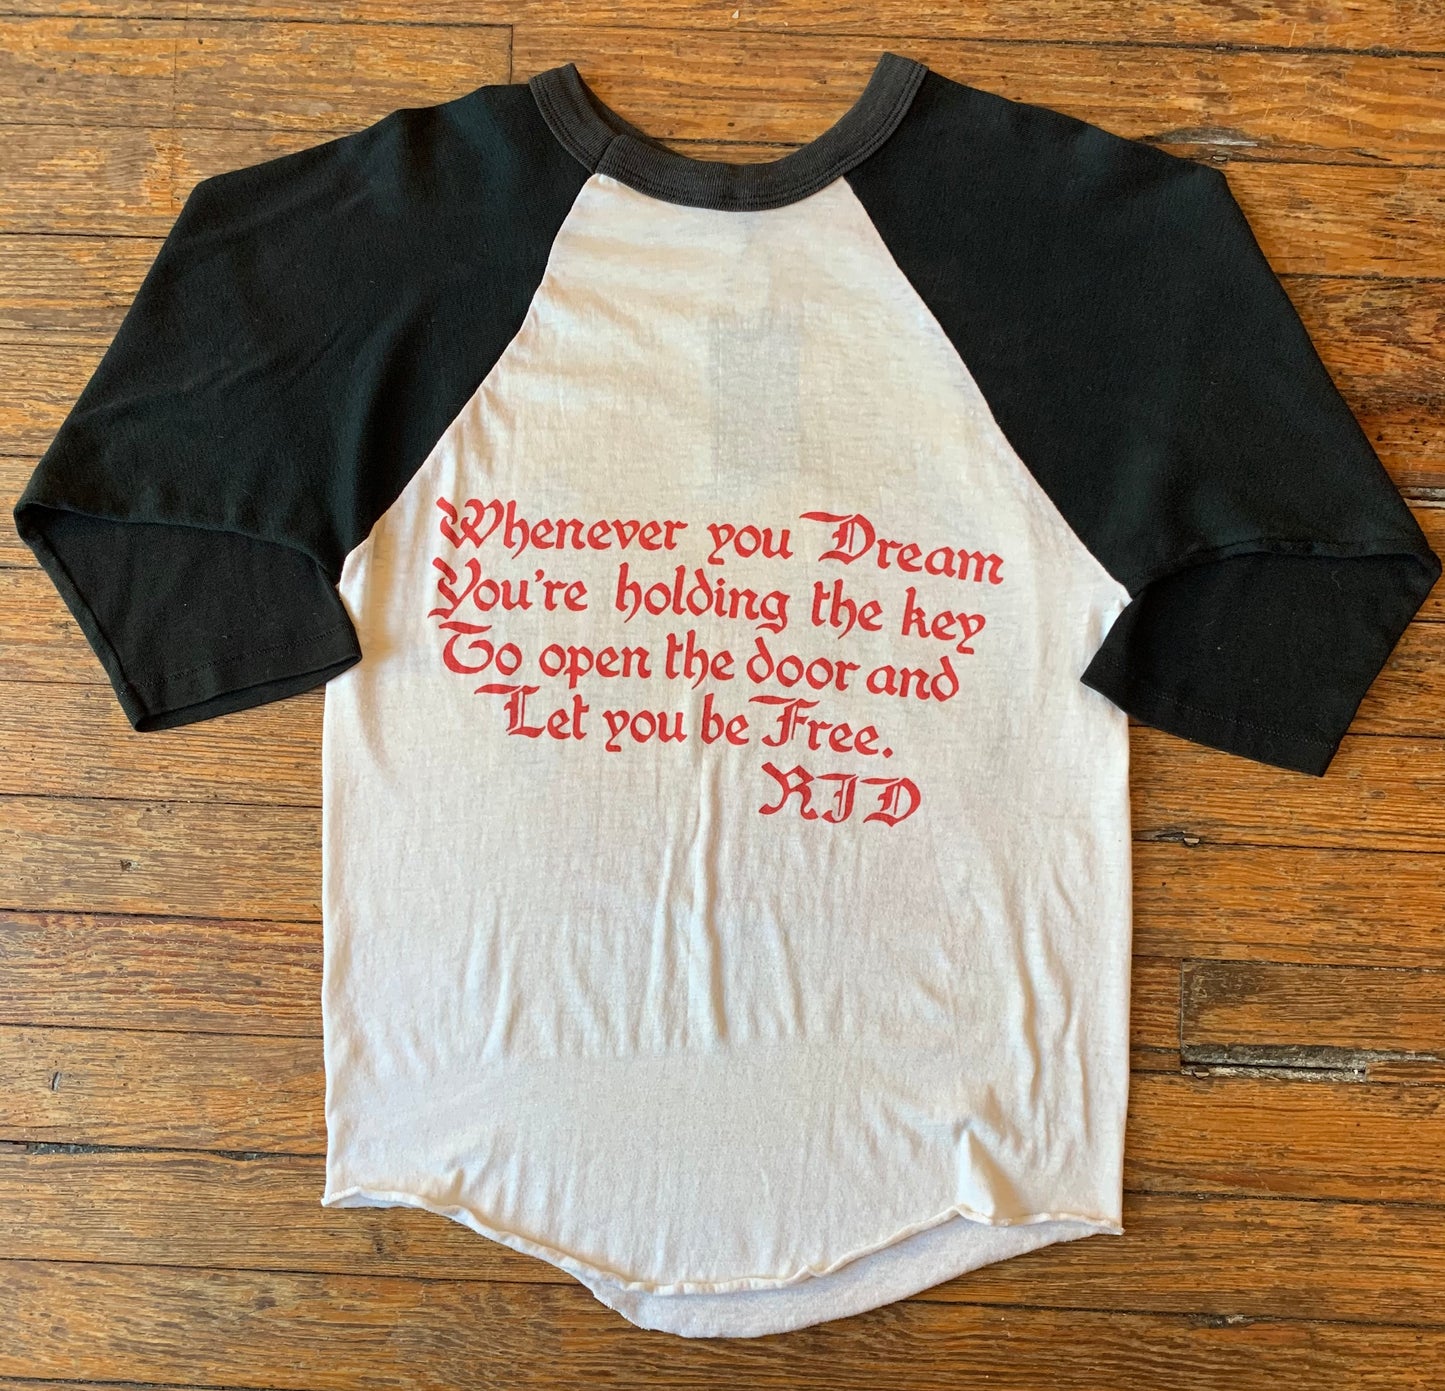 Vintage 1985 Dio Sacred Heart Dragon Raglan Baseball T-Shirt